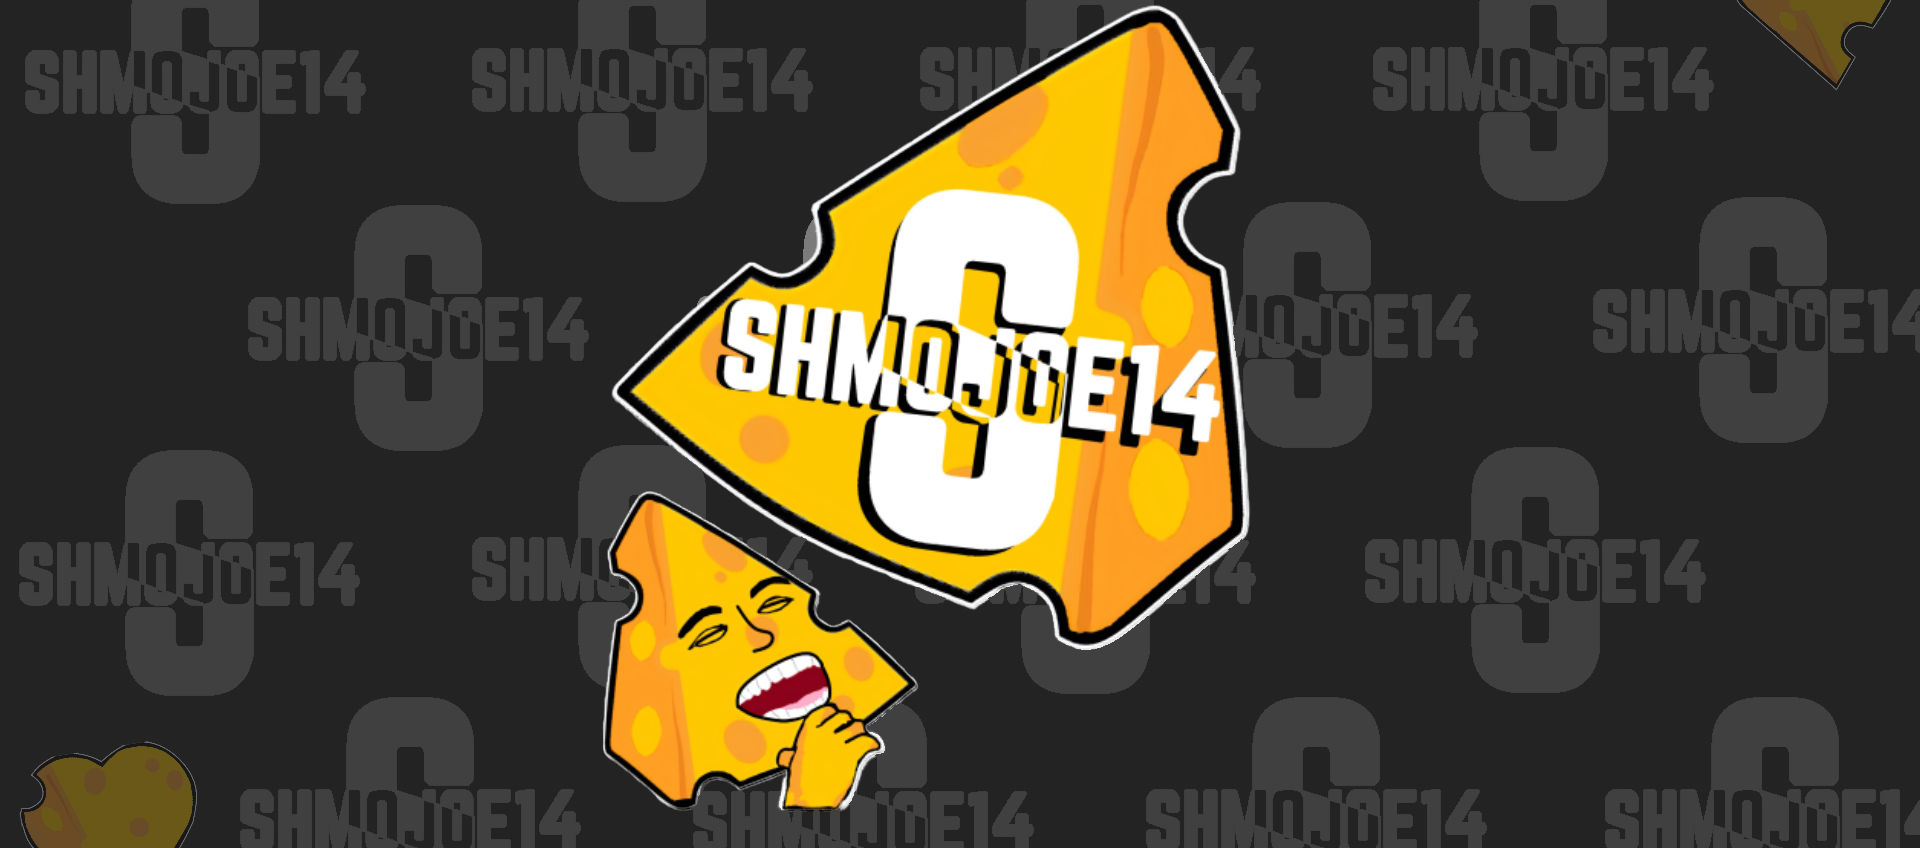 SHMOJOE14's header